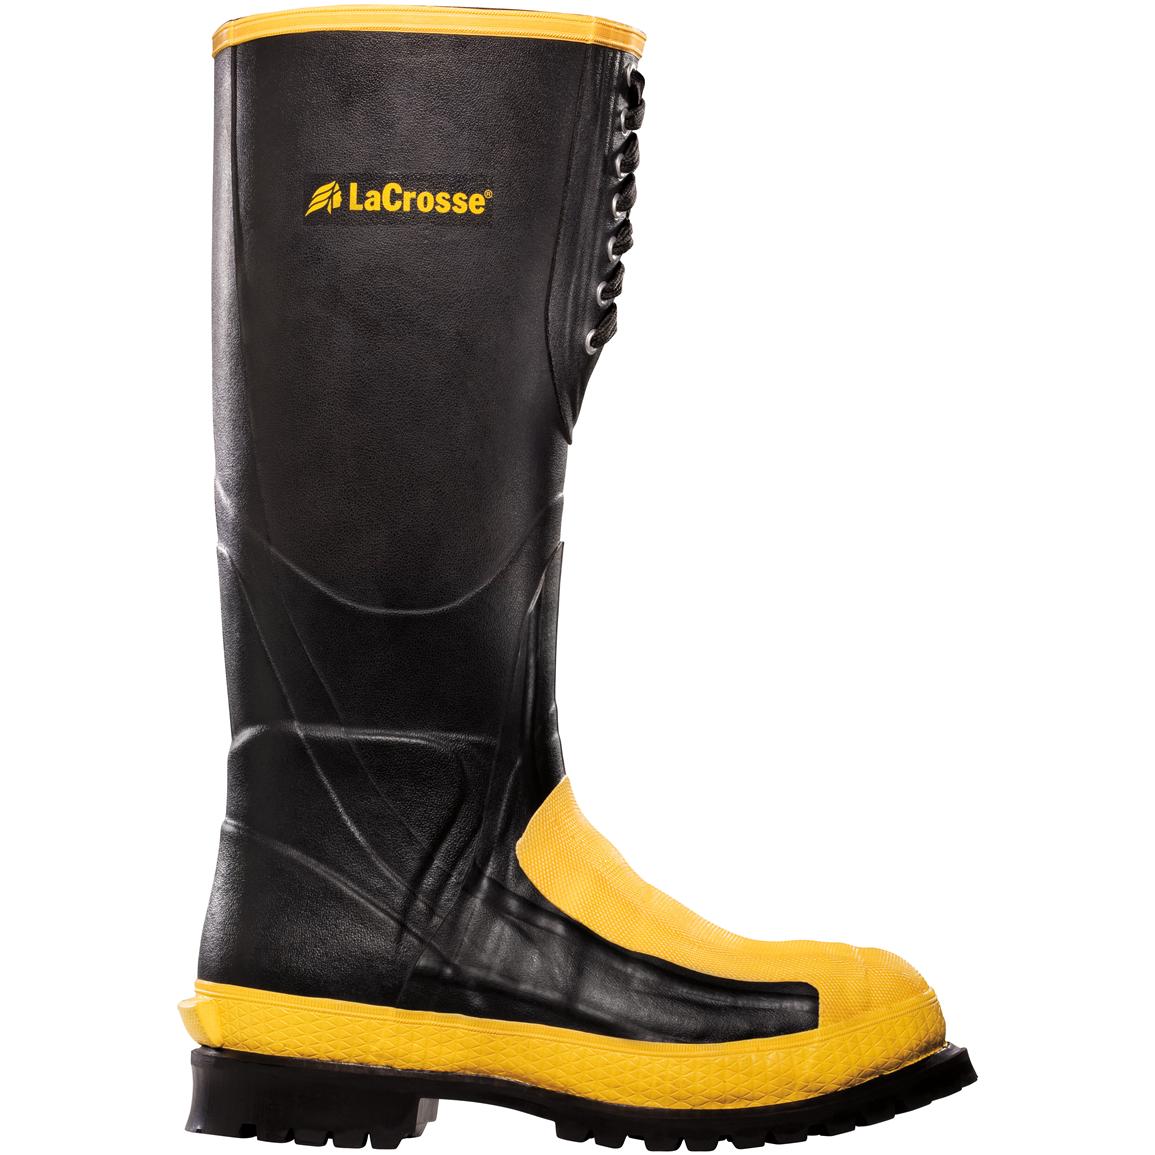 Men's LaCrosse® 16 inch Meta-Pac Work Boots with Alloy Toe / Metatarsal Guard, Black